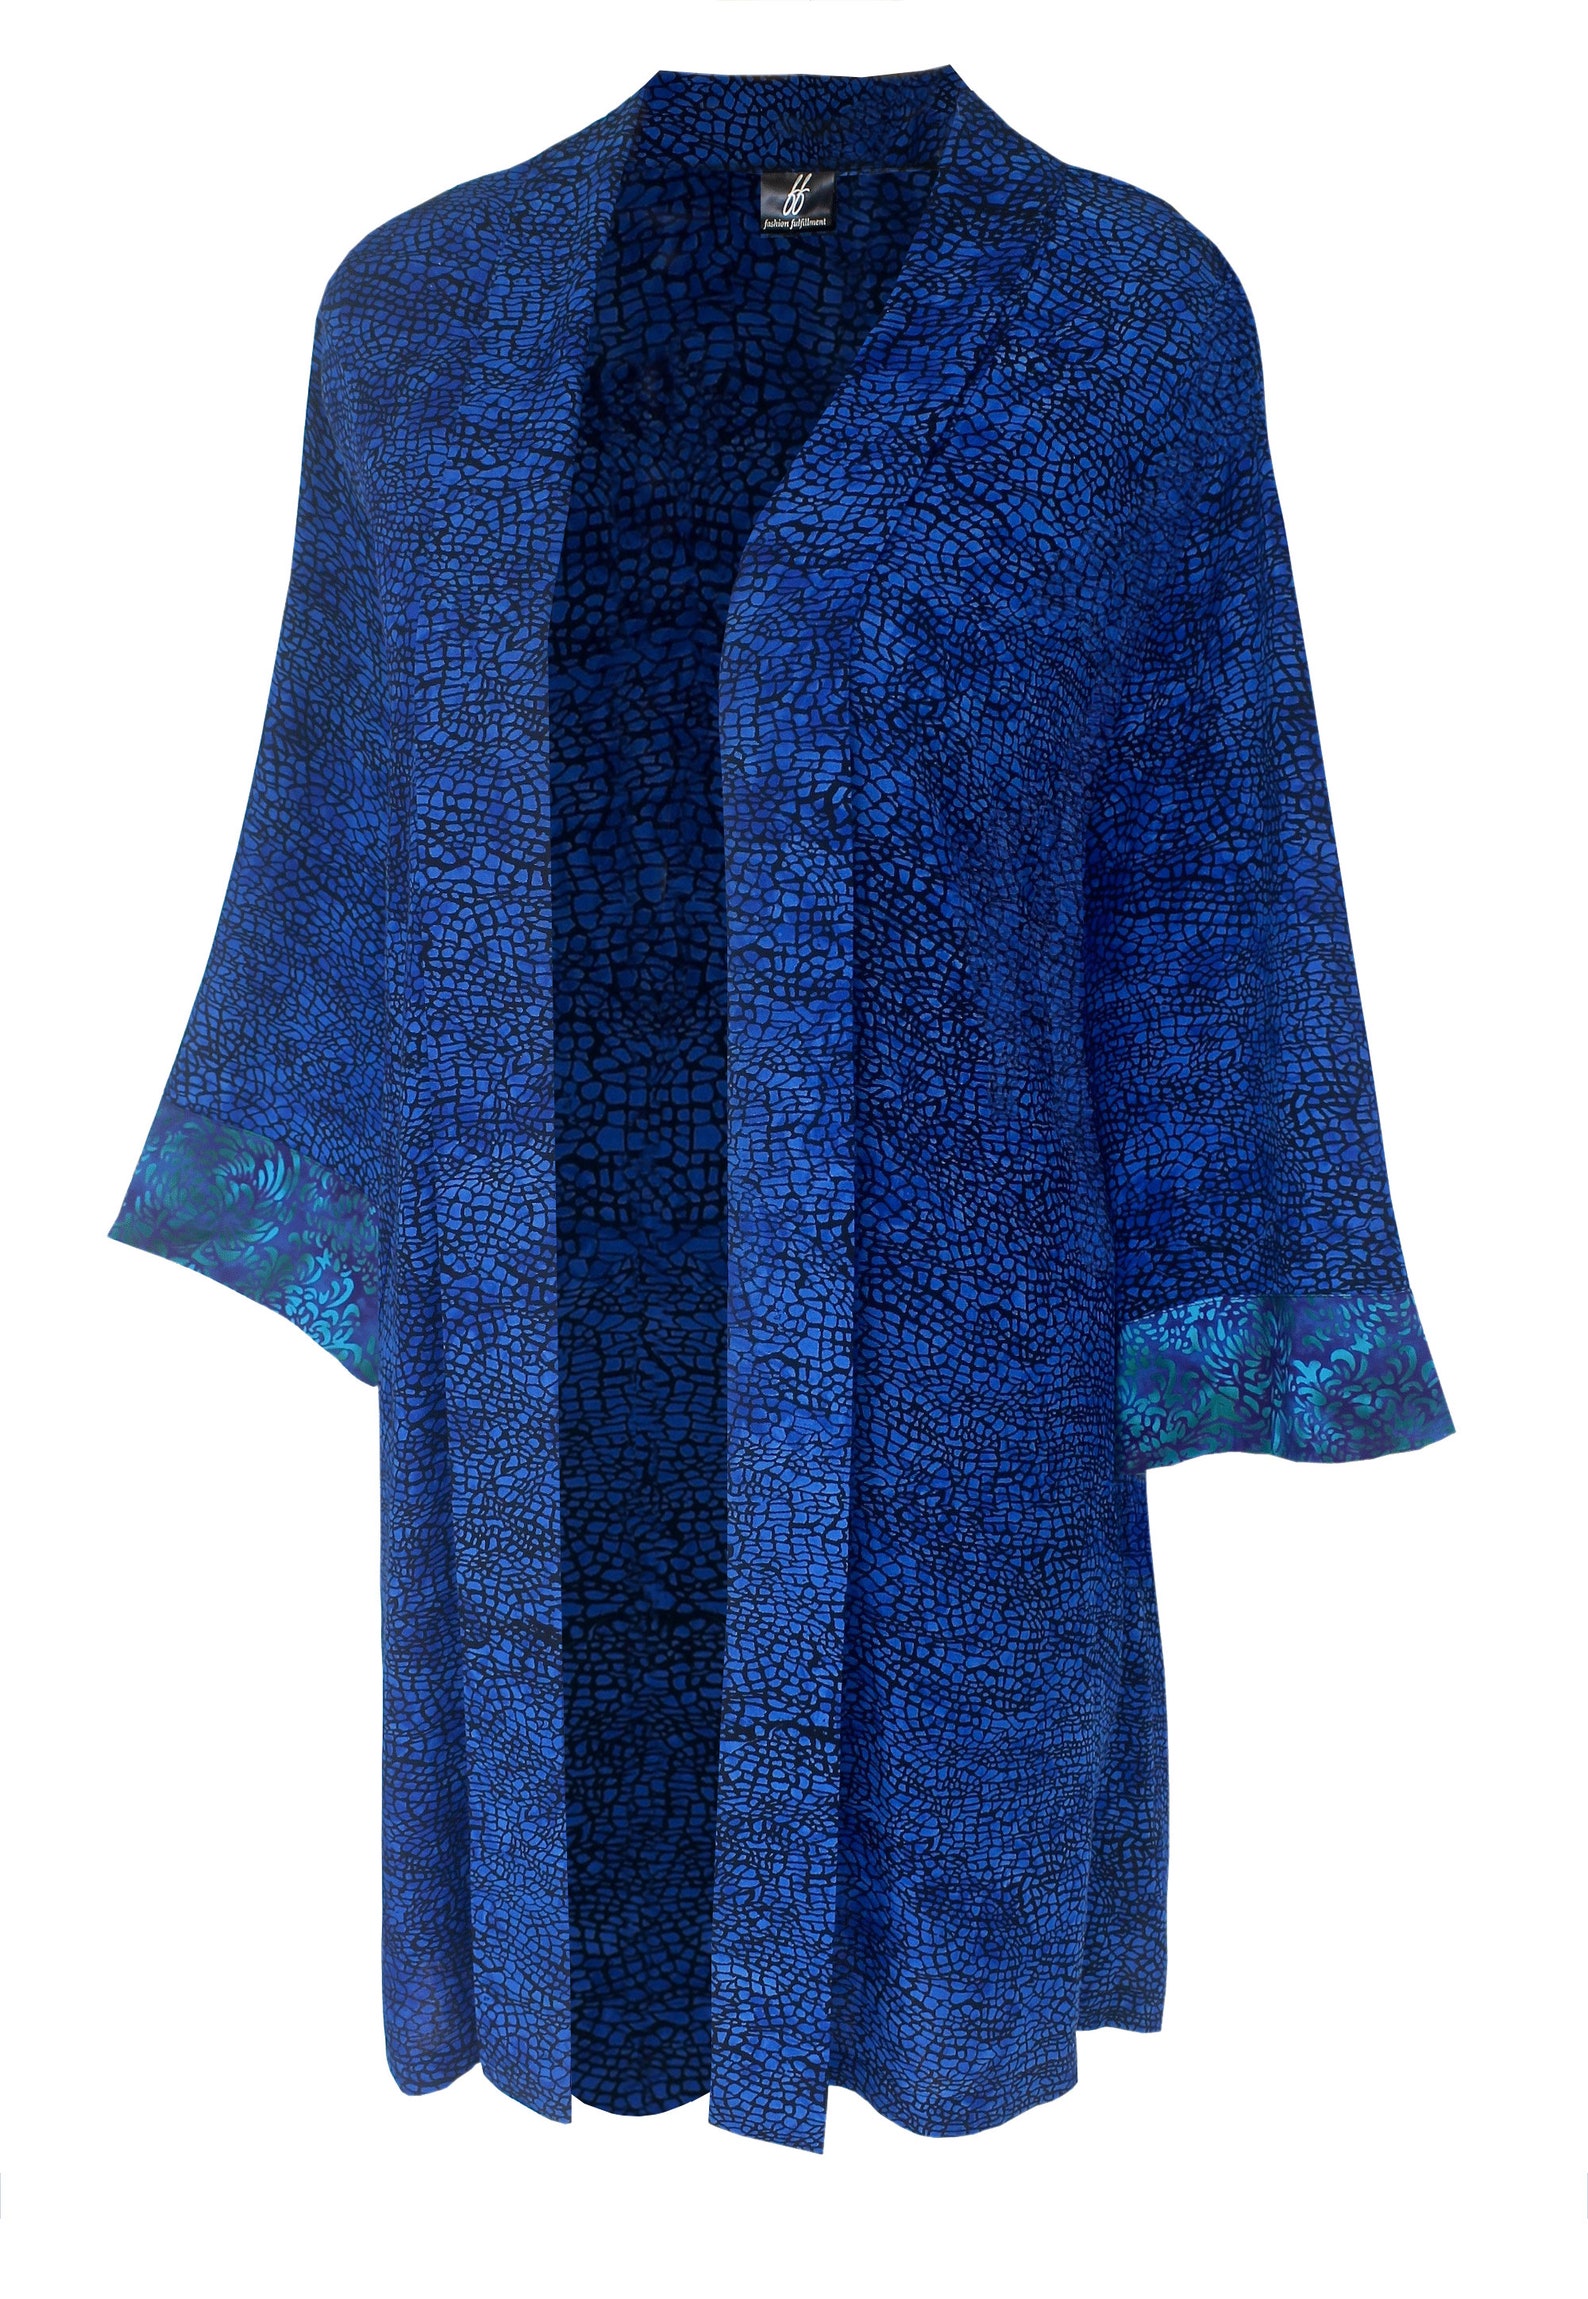 Blue Kimono Jacket Plus Size Jacket Women's Kimono | Etsy